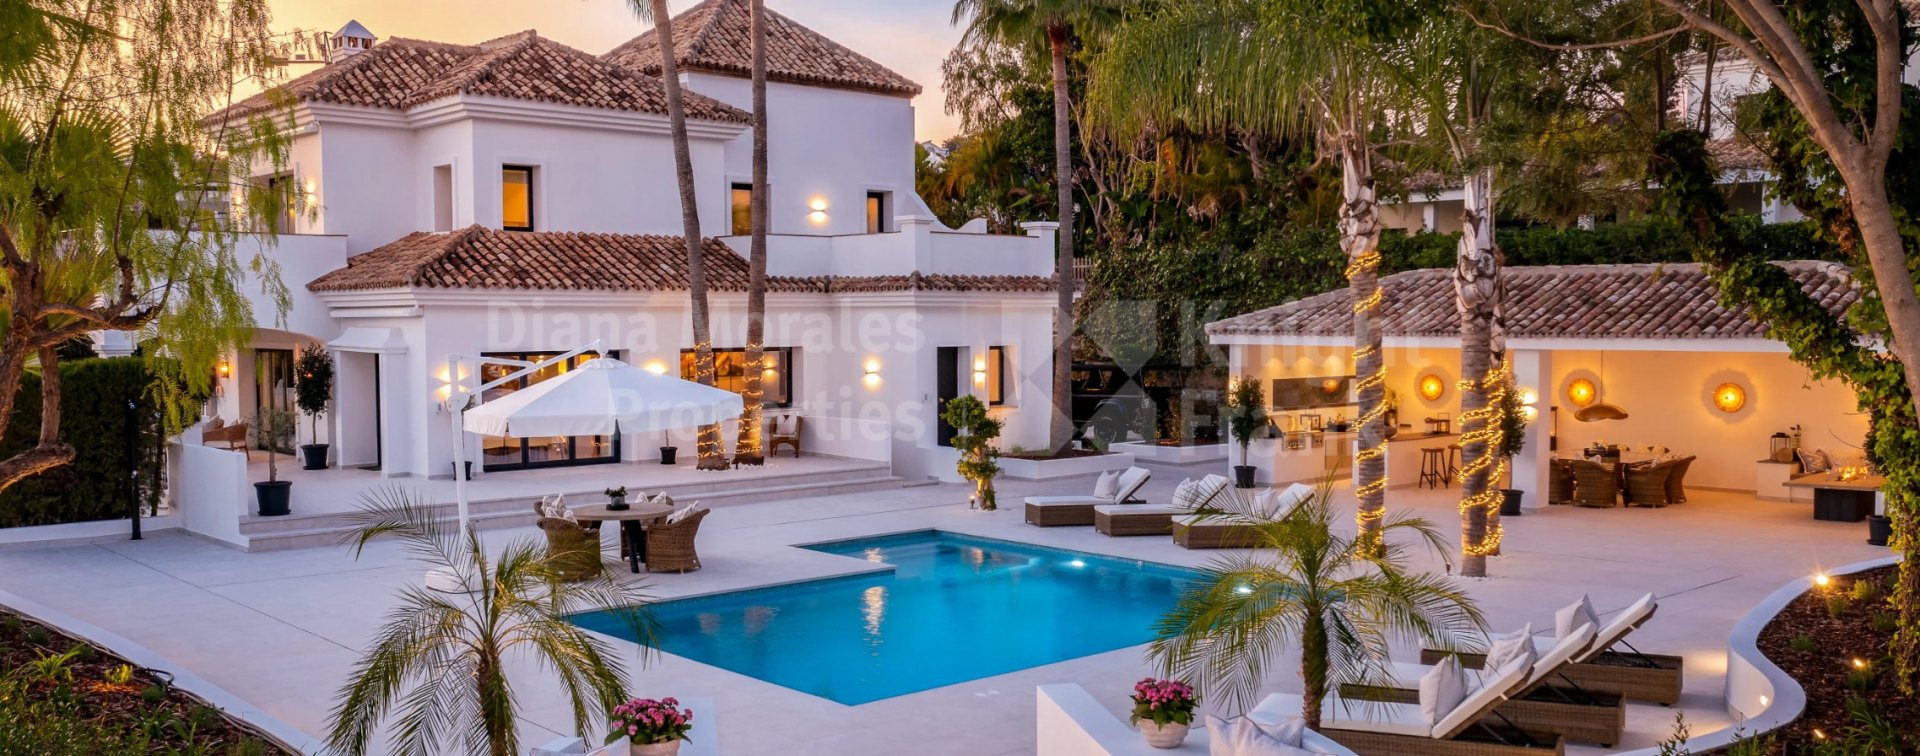 Wunderschöne Villa in El Paraiso komplett renoviert